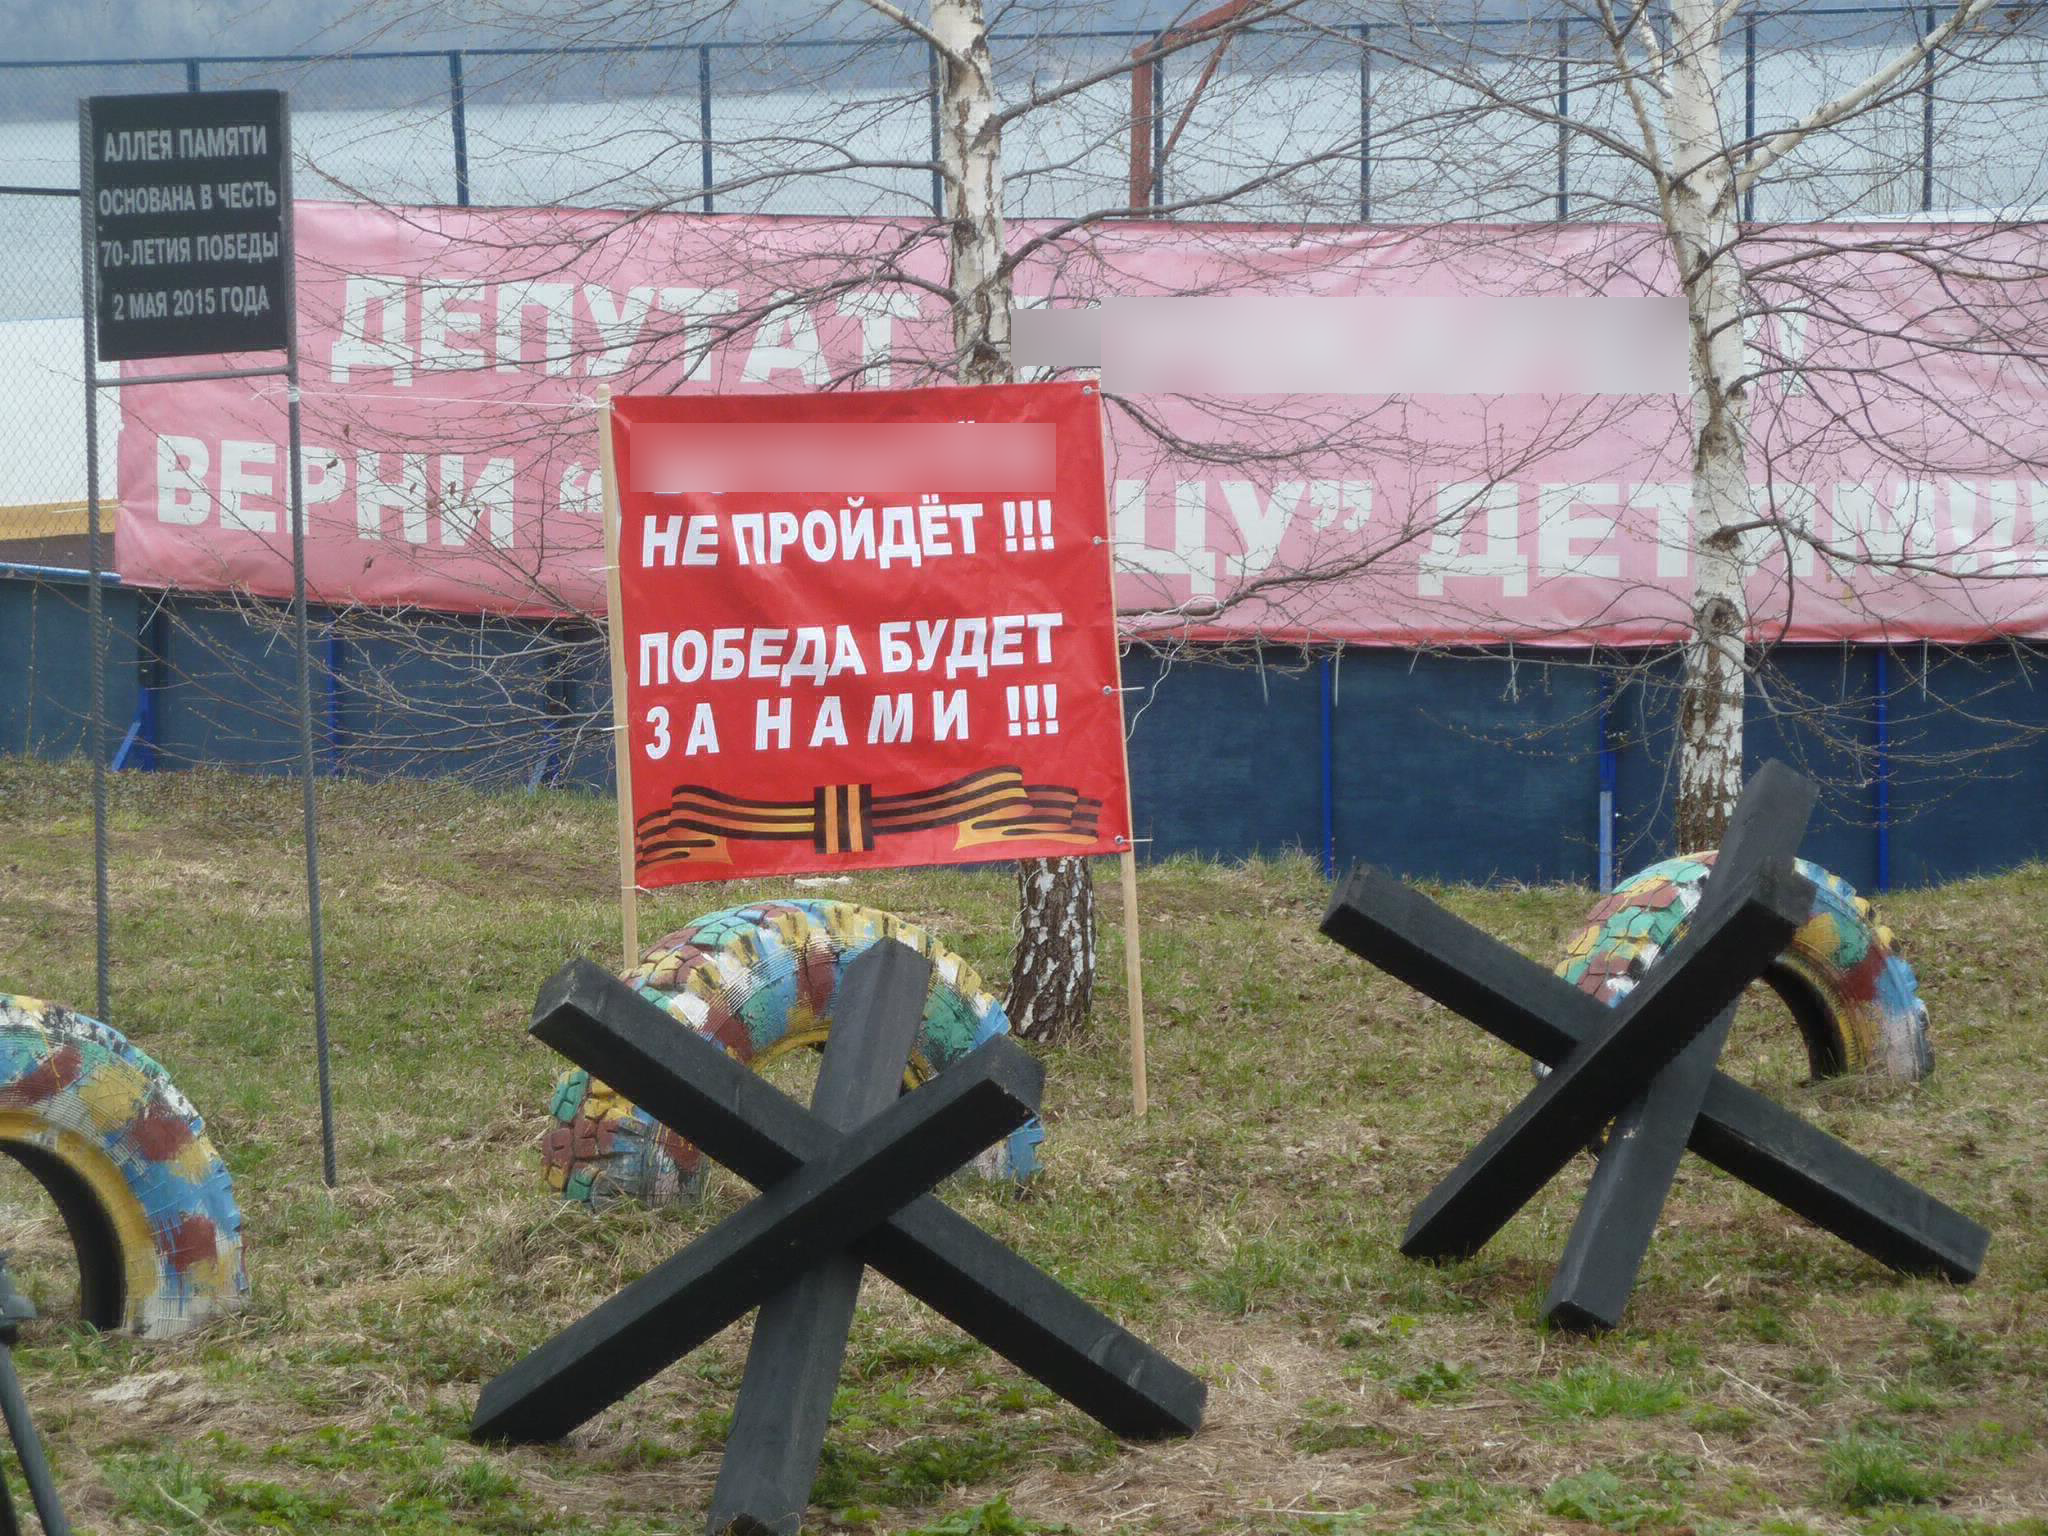 Нижегородцы установили противотанковые ежи, защищая детскую площадку от депутата